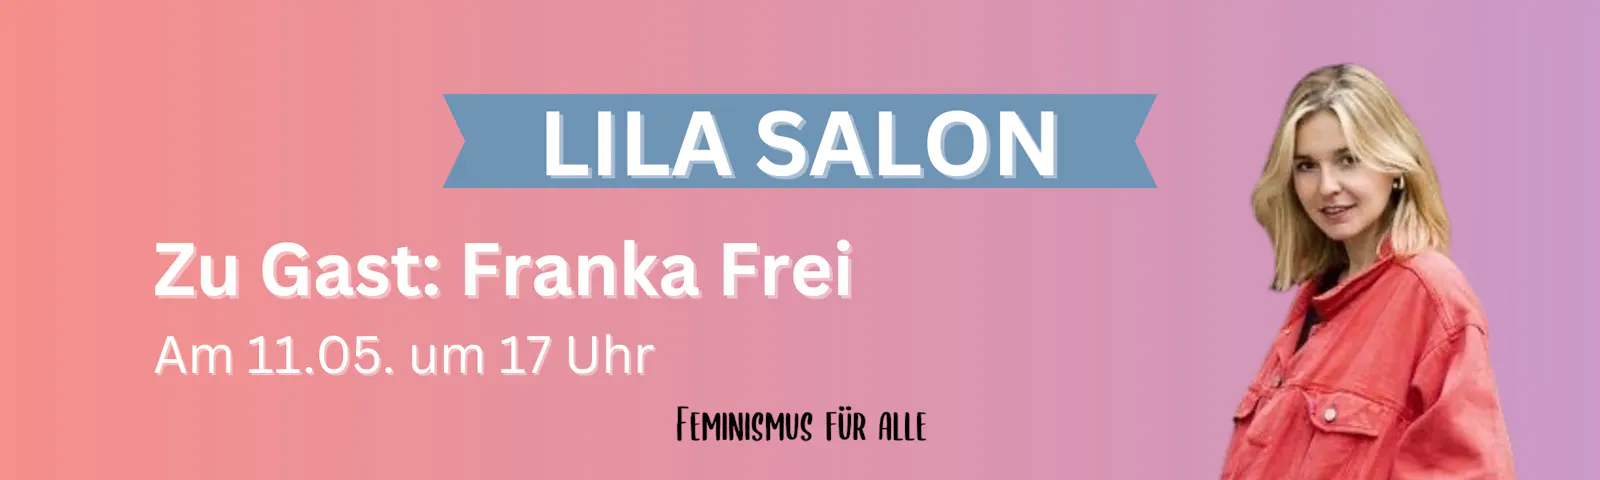 Bild von Franka Frei, darüber steht: "Lila Salon", darunter "Zu Gast: Franka Frei" und das Datum 11.05. um 17 Uhr